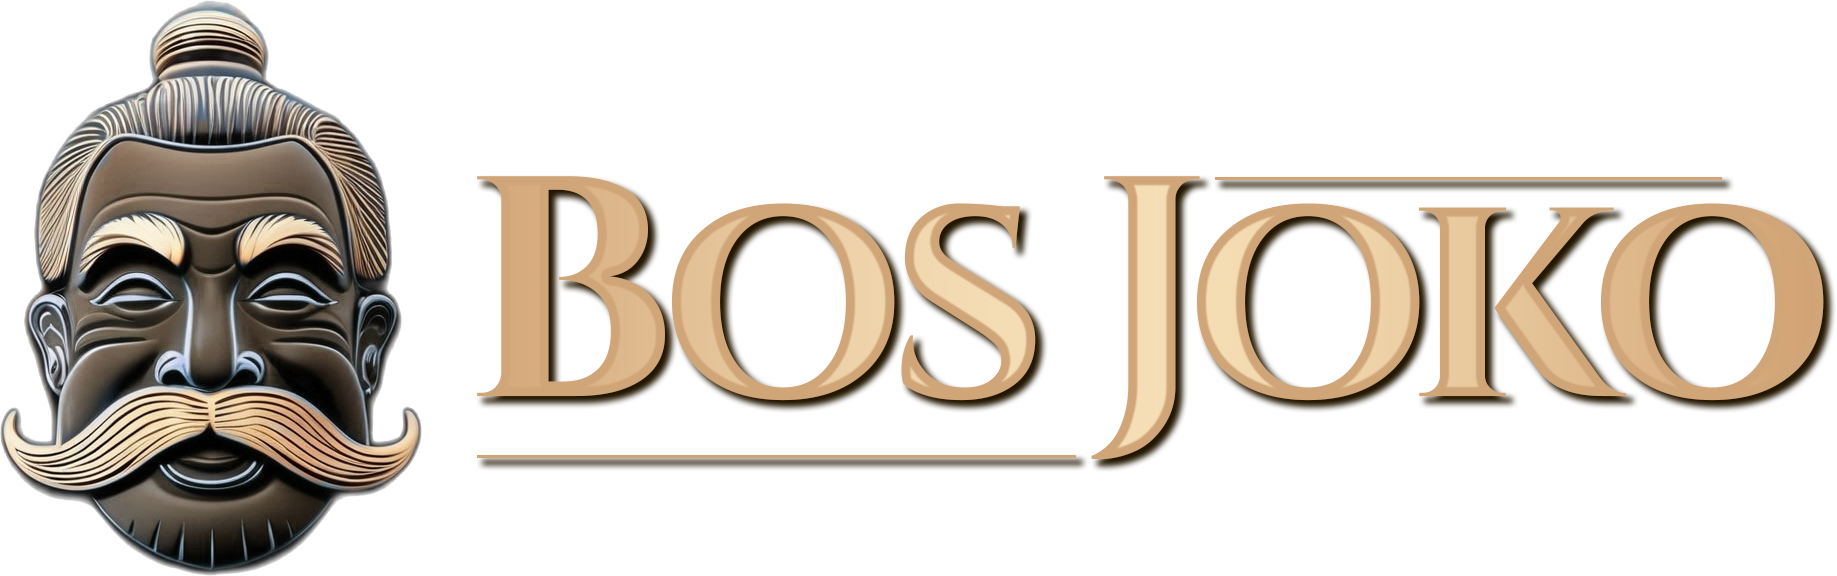 BOSJOKO – Online gaming trusted